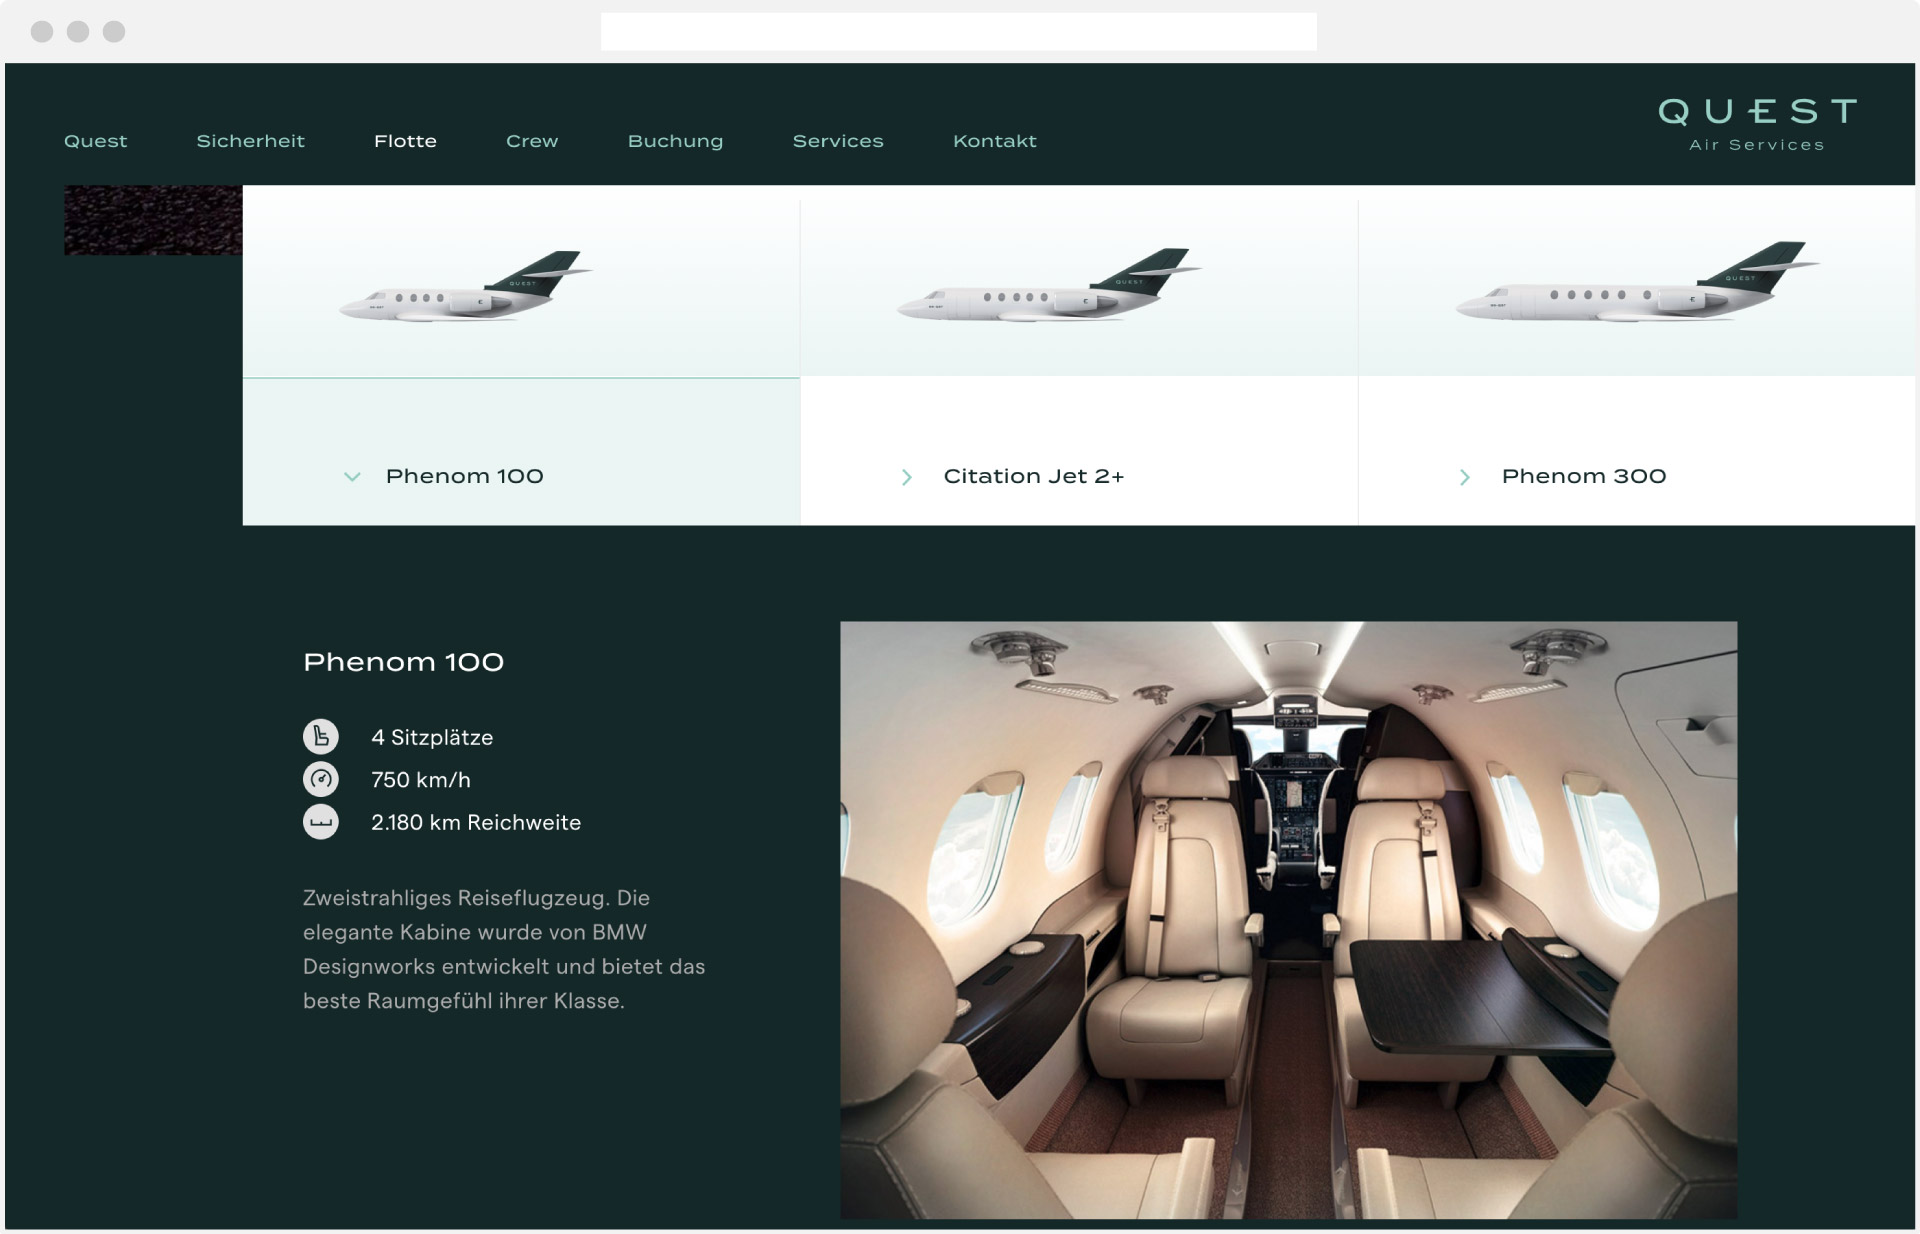 Webdesign Quest Air Services Flugzeuge